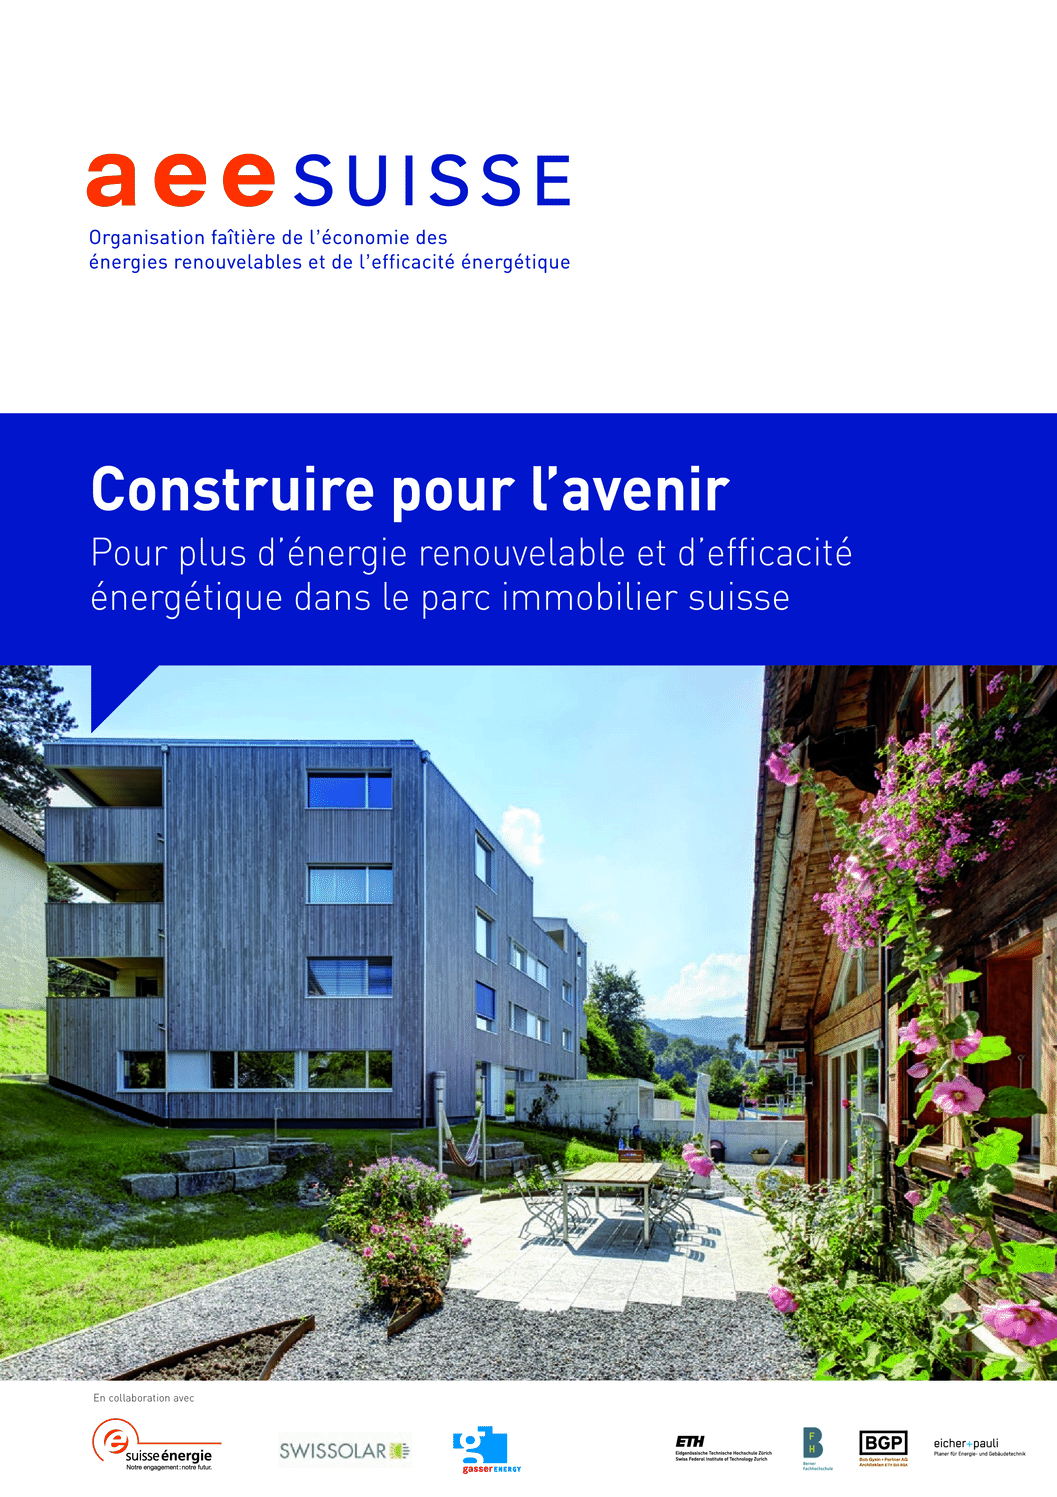 aee suisse Brochure Construire pour l'avenir